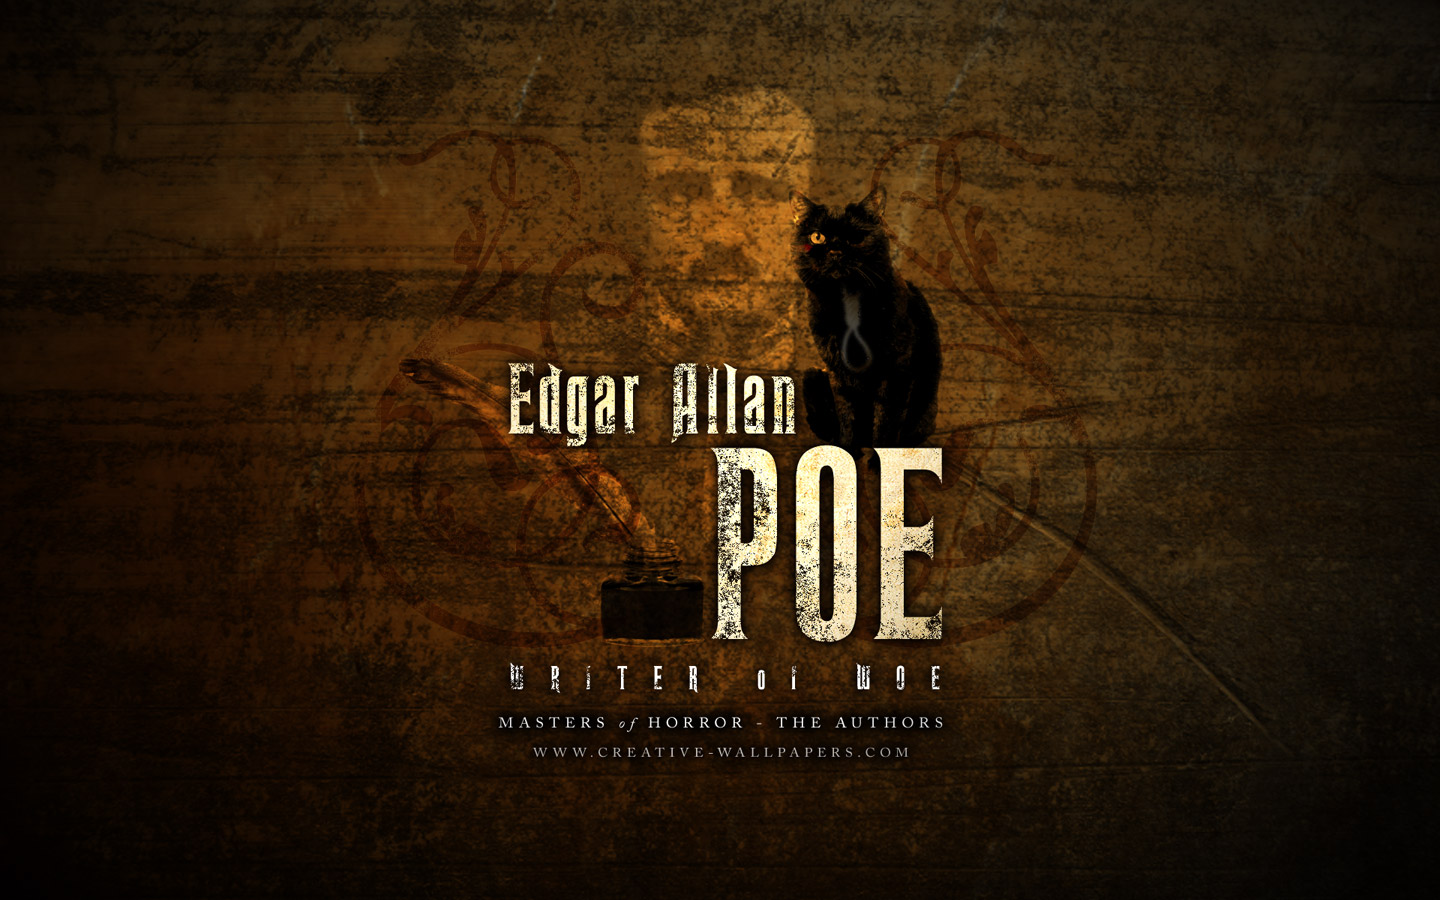 El Espejo G Tico Edgar Allan Poe Wallpaper Fondos